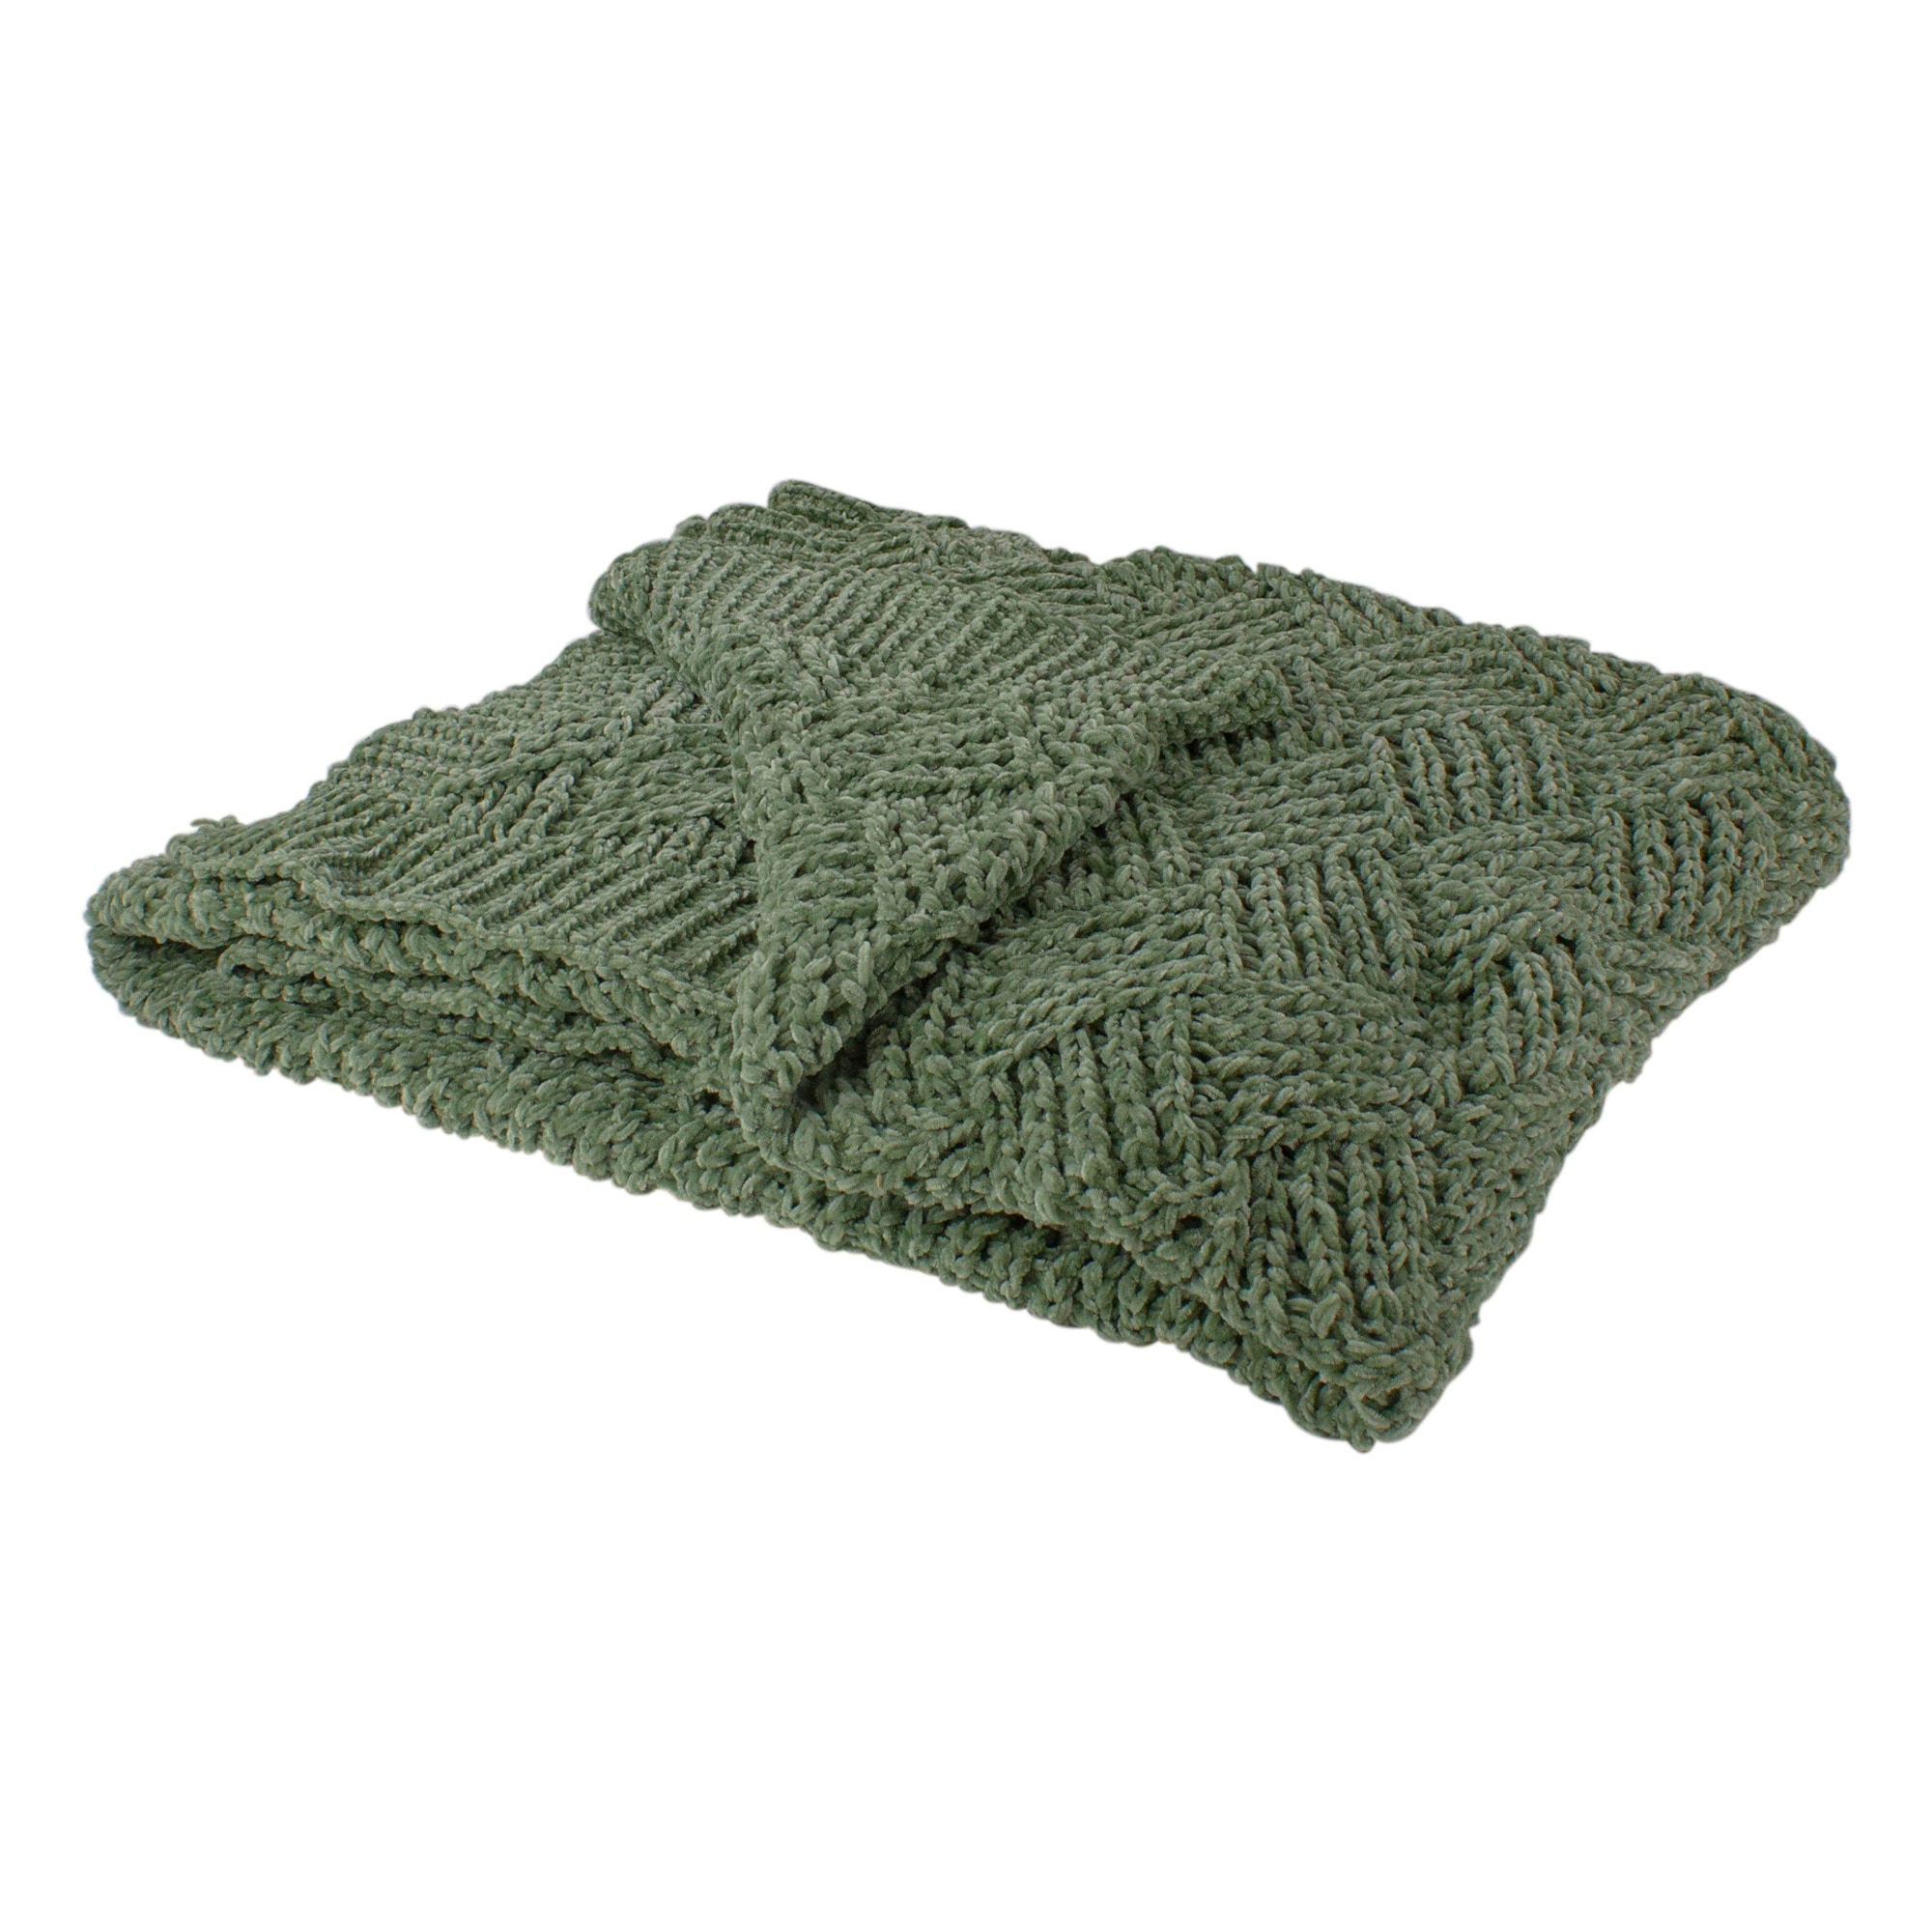 Grosse laine vert foncé - 100 % polyester chenille - Blanket